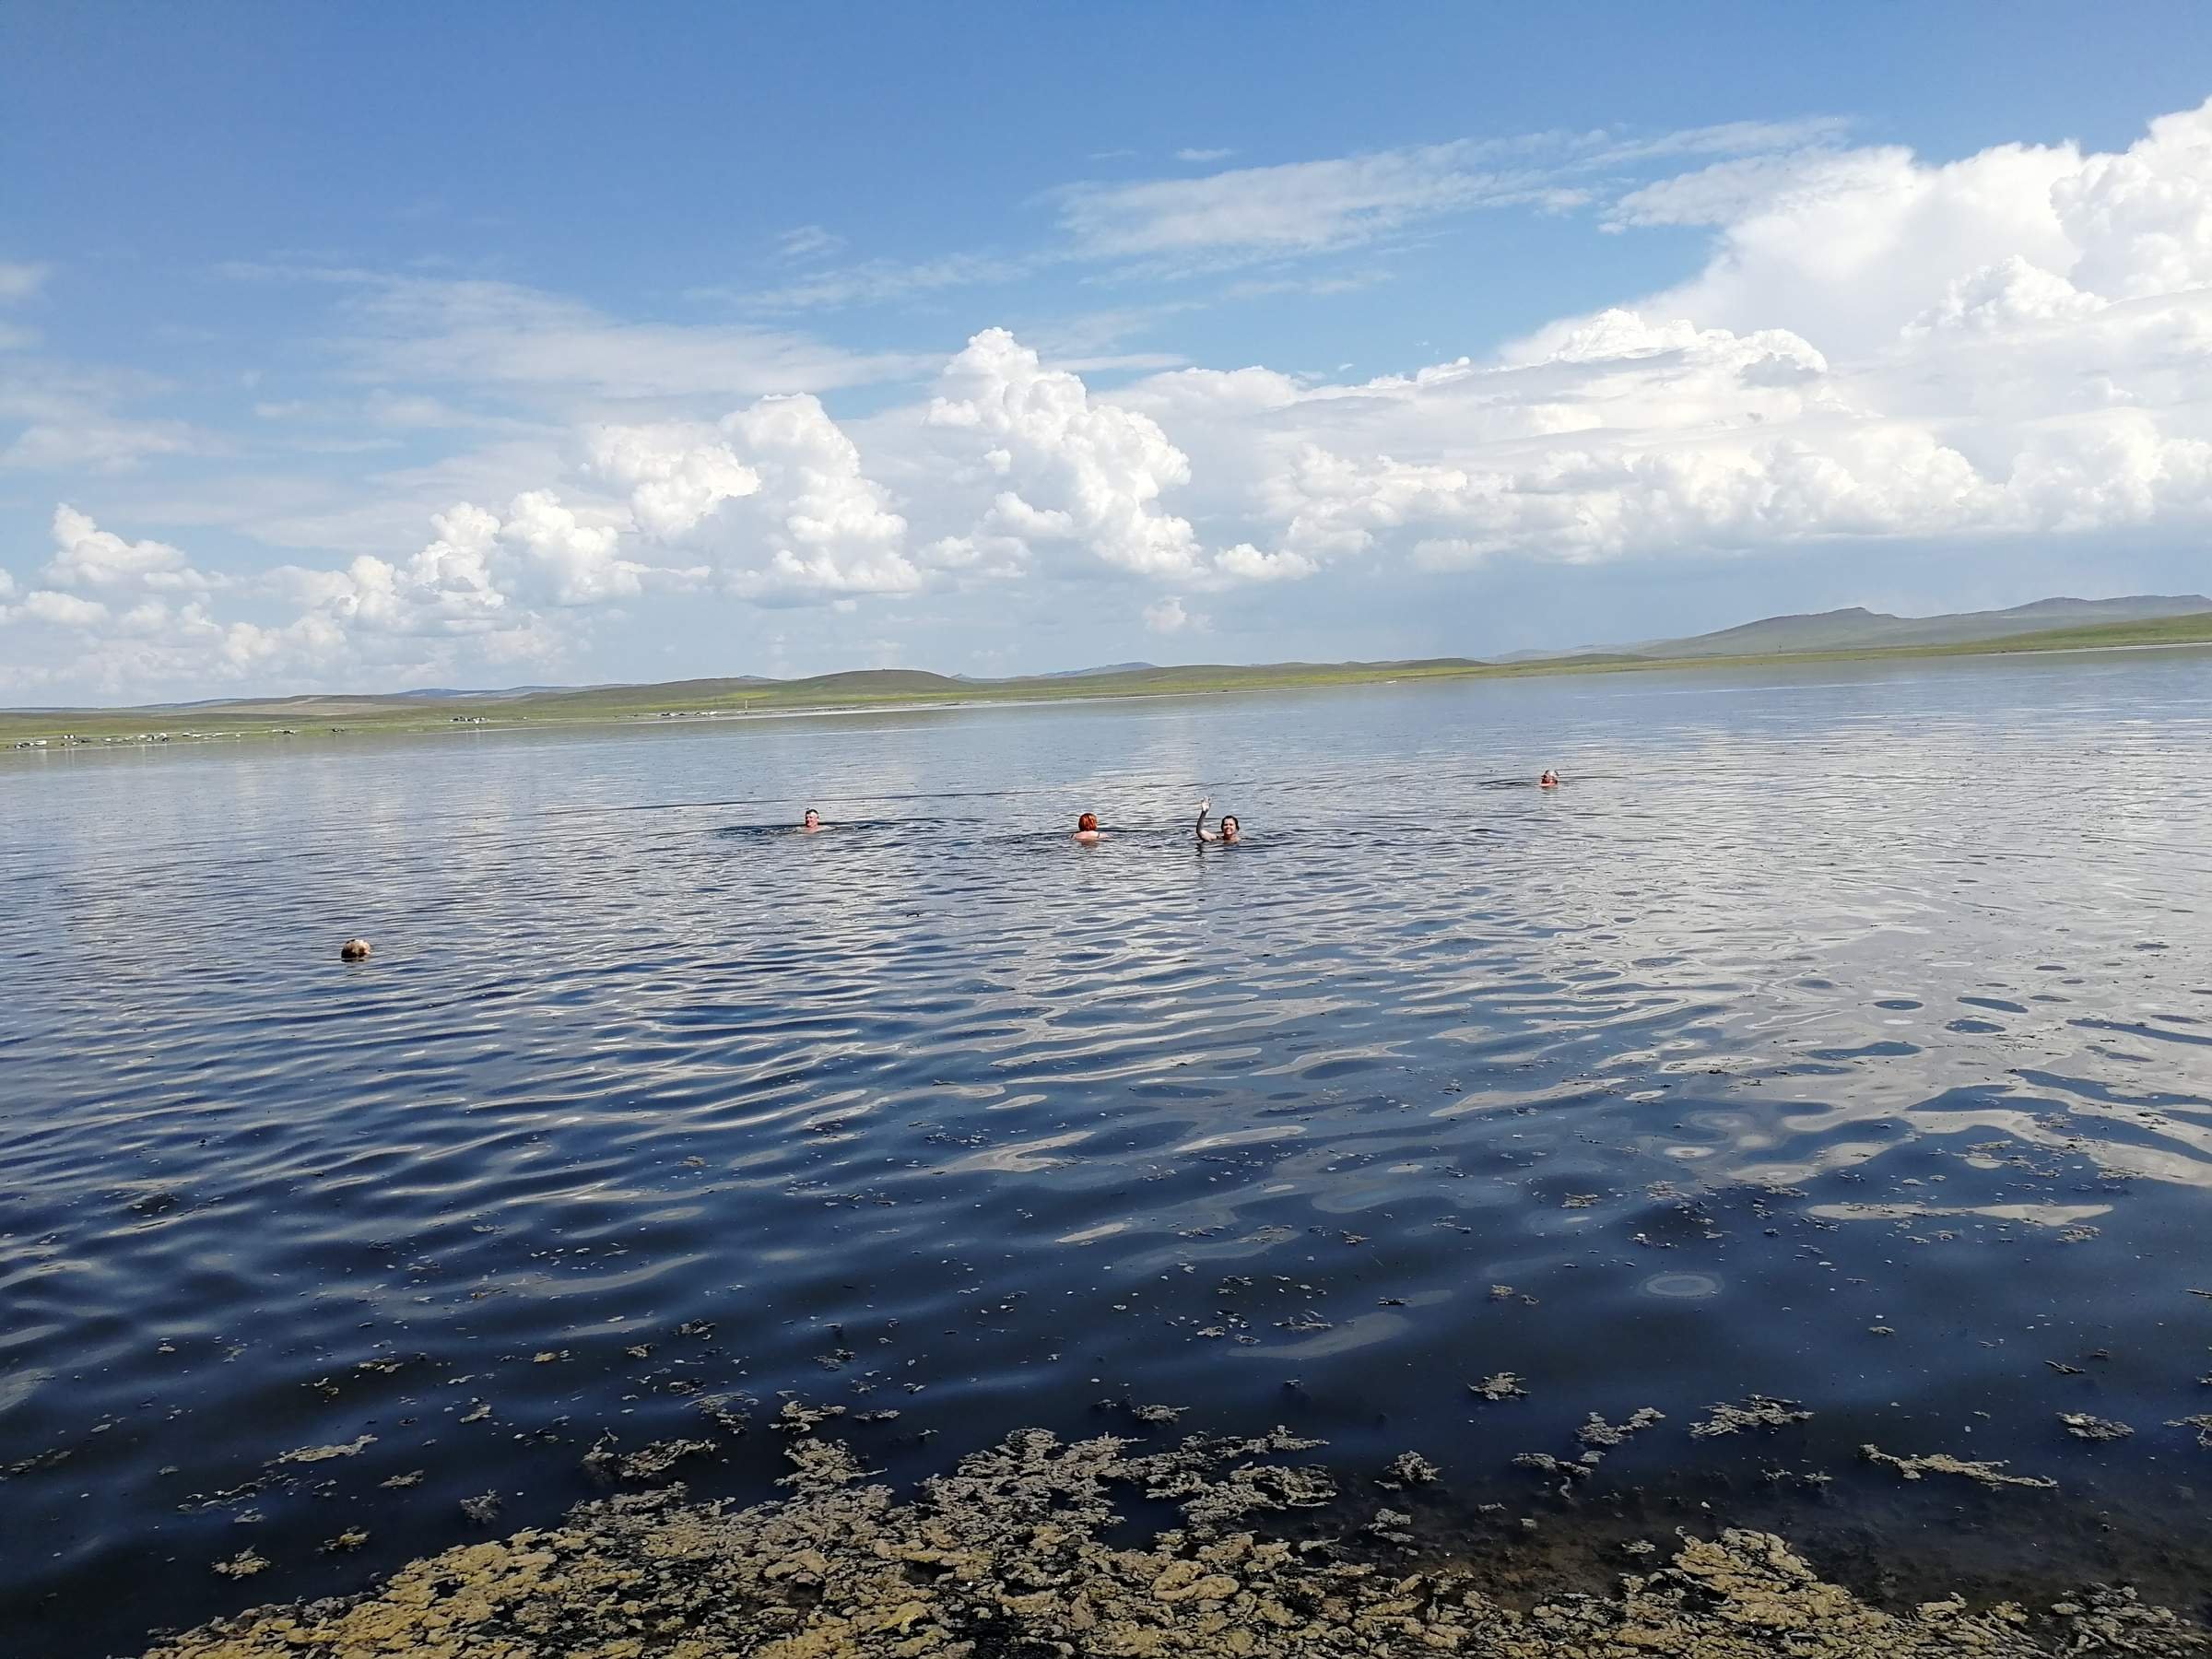 лечебные озера челябинской области